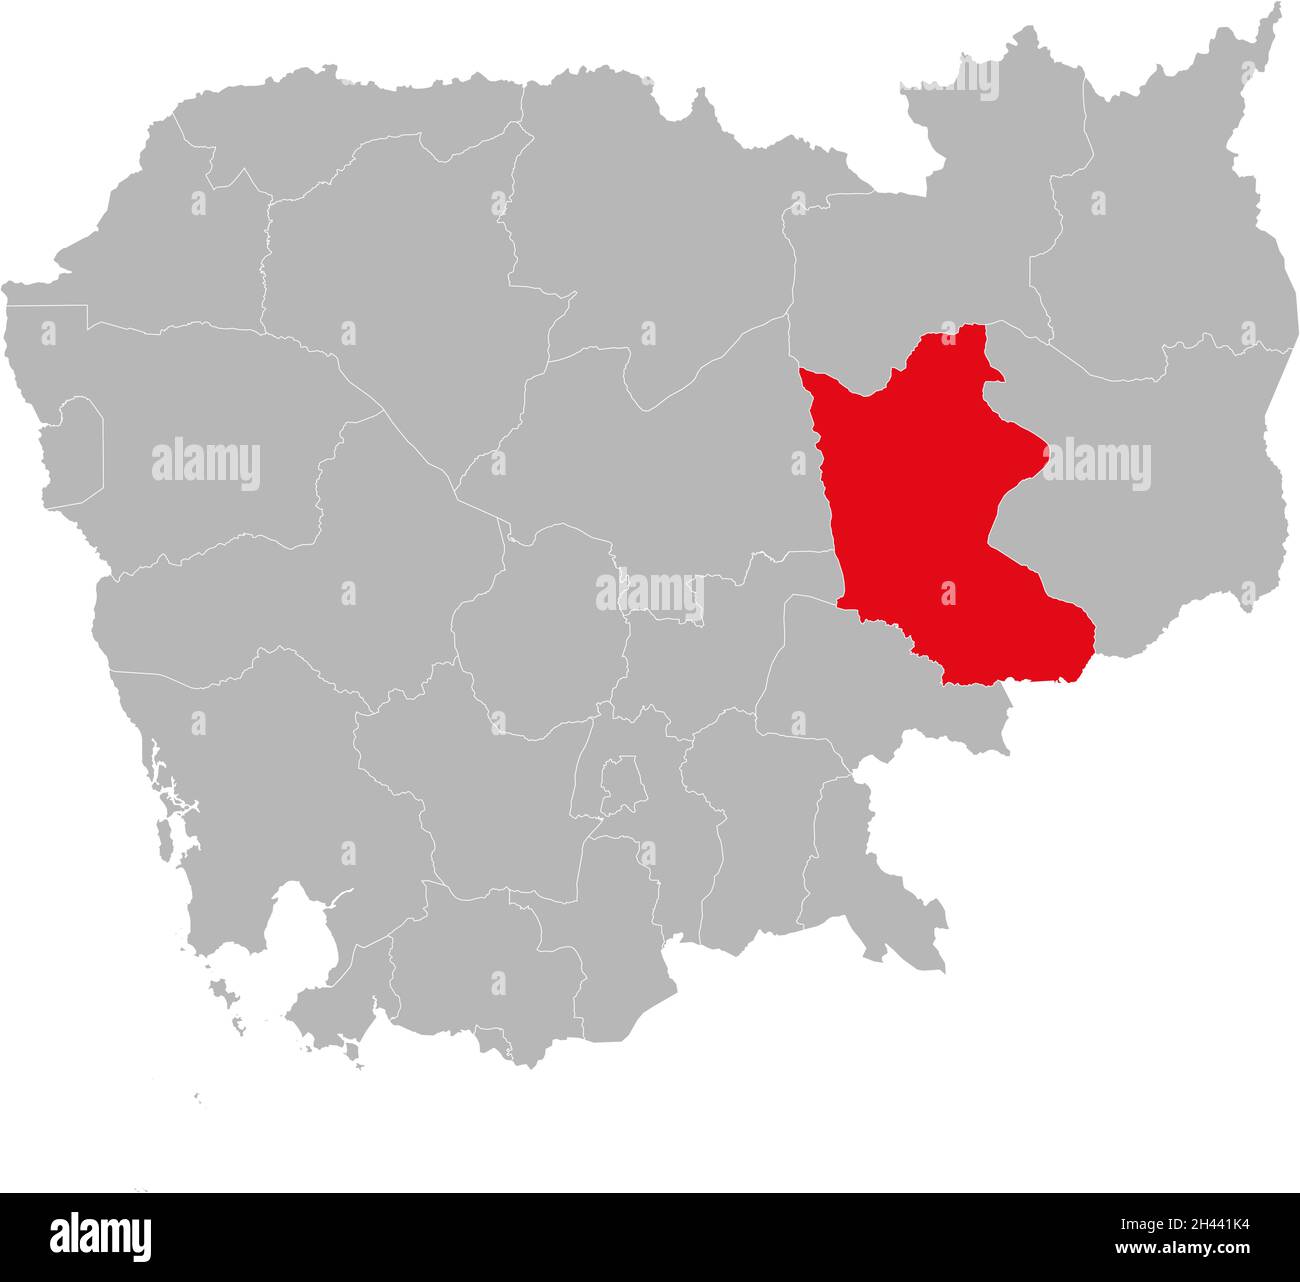 Provinz Kratie isolierte kambodschanische Landkarte. Grauer Hintergrund. Geschäftskonzepte und -Hintergründe. Stock Vektor